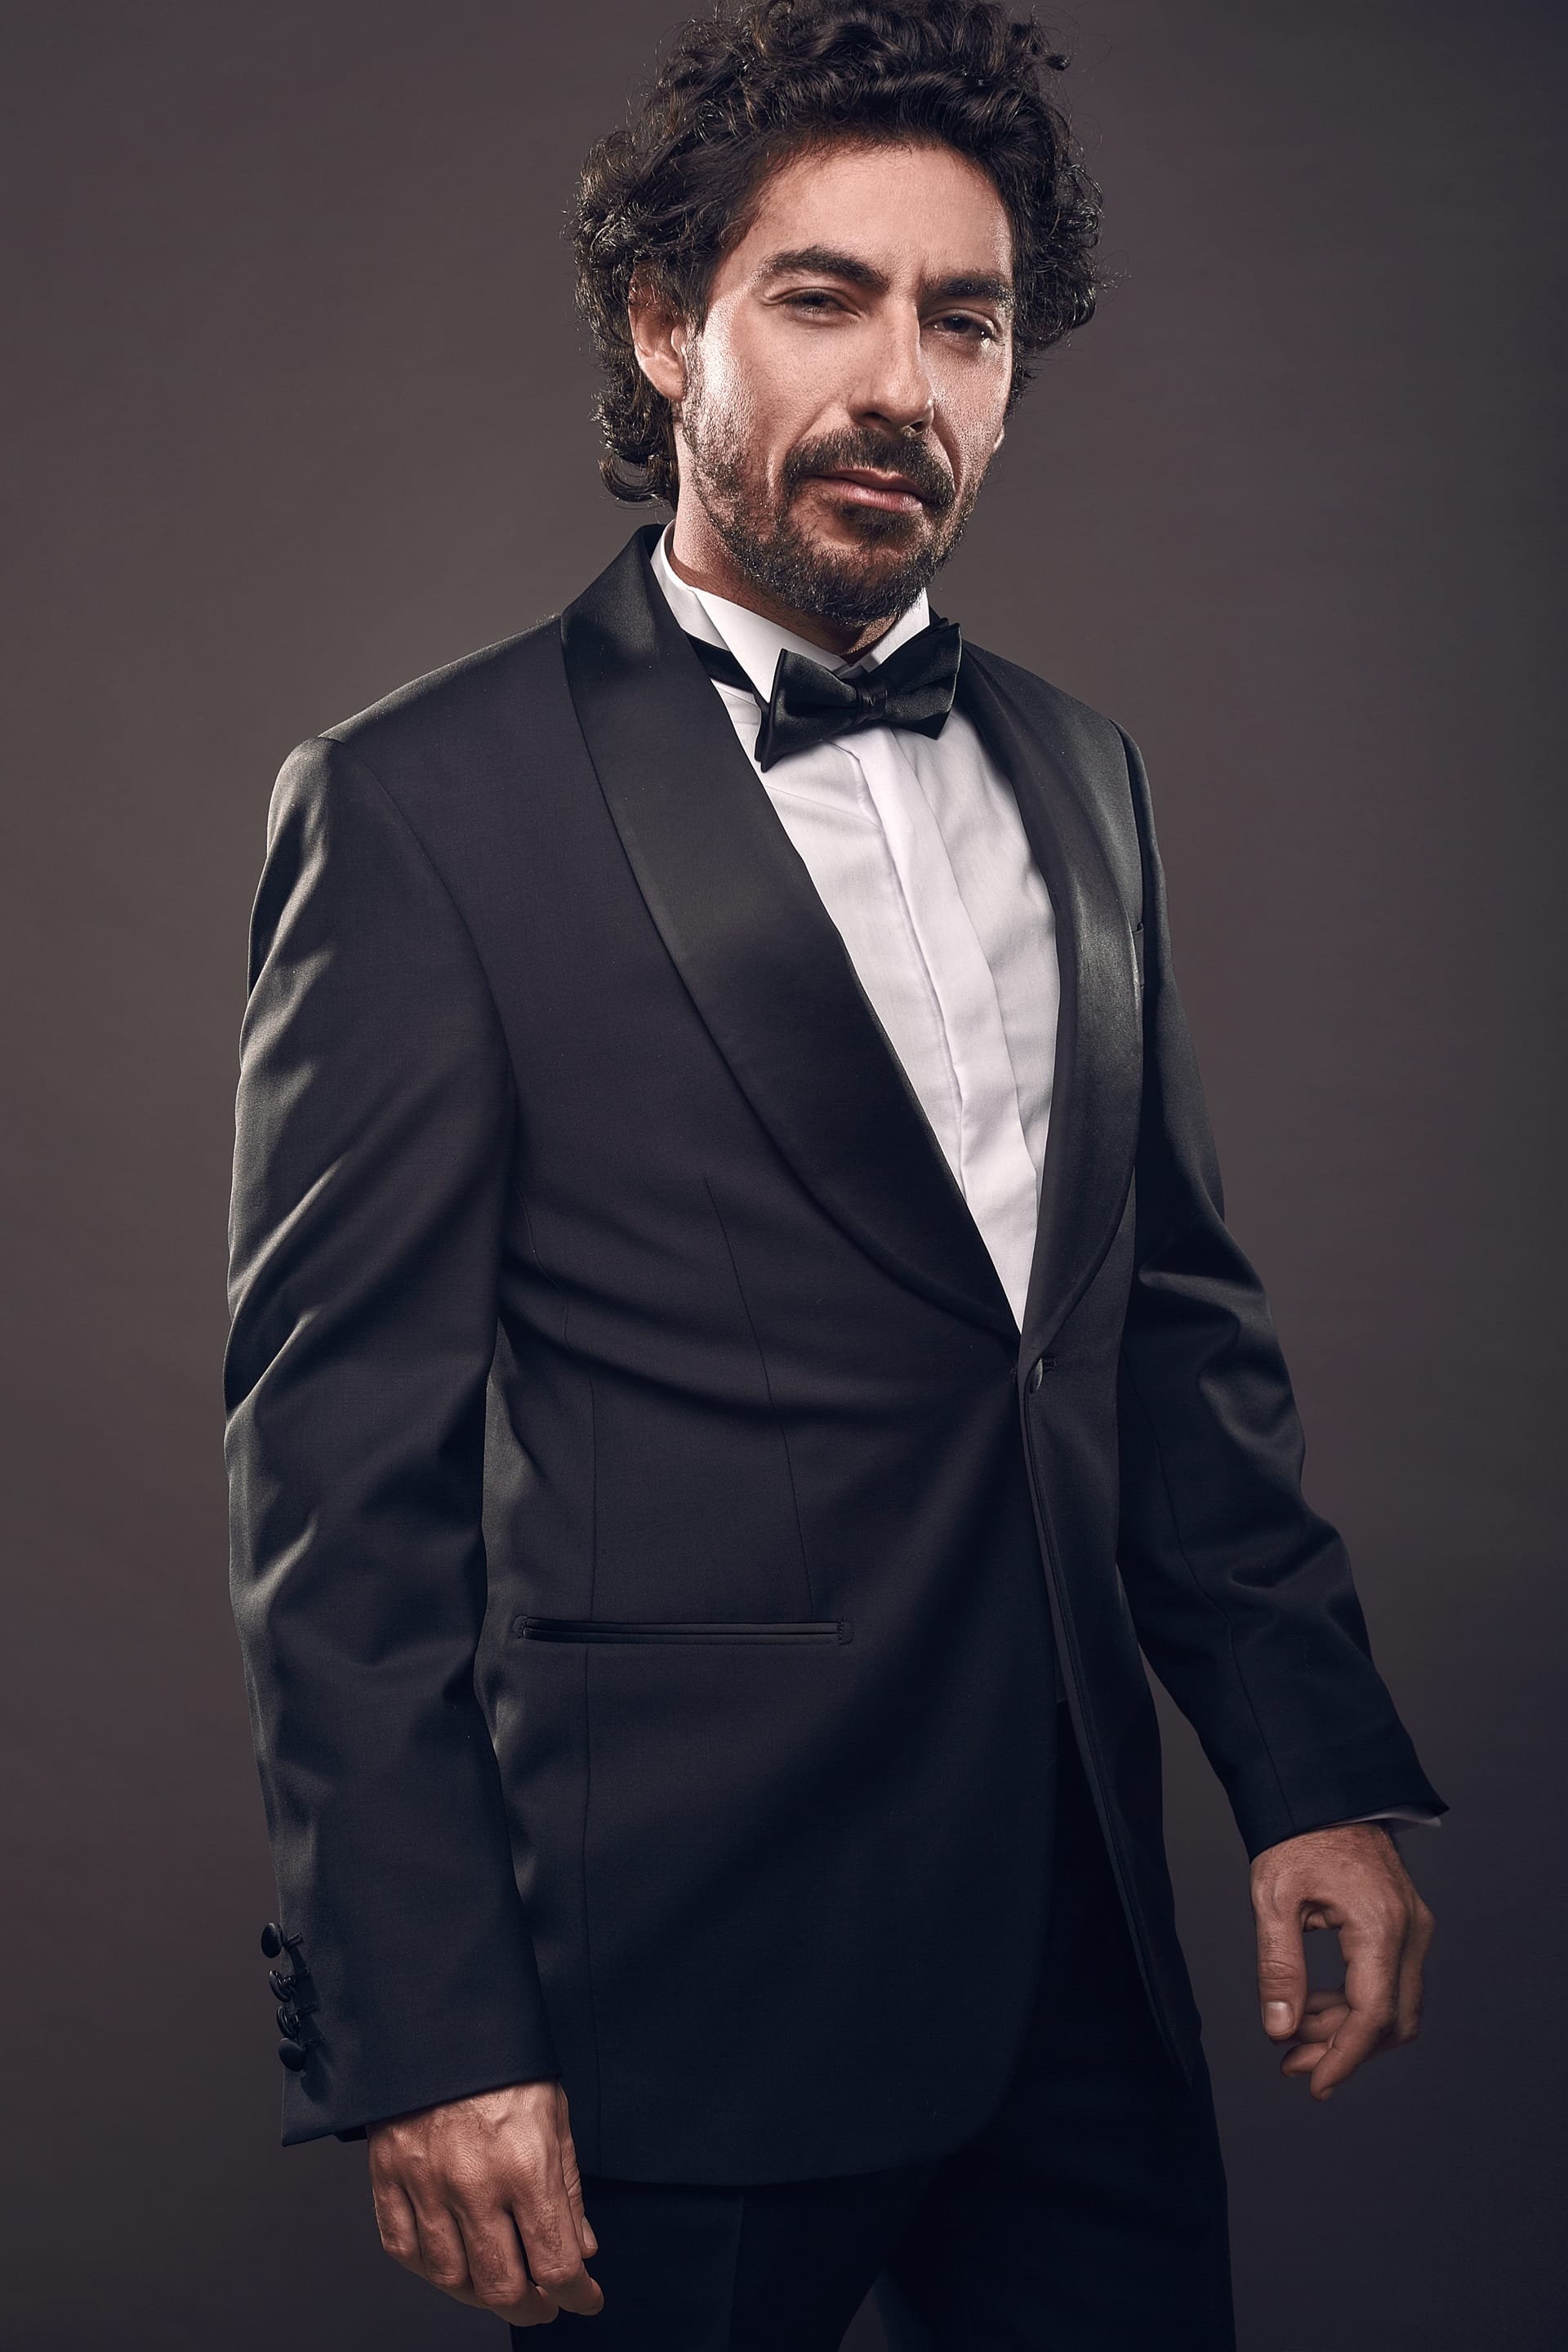 Portrait elegant brutal fashion man suit guy profile picture